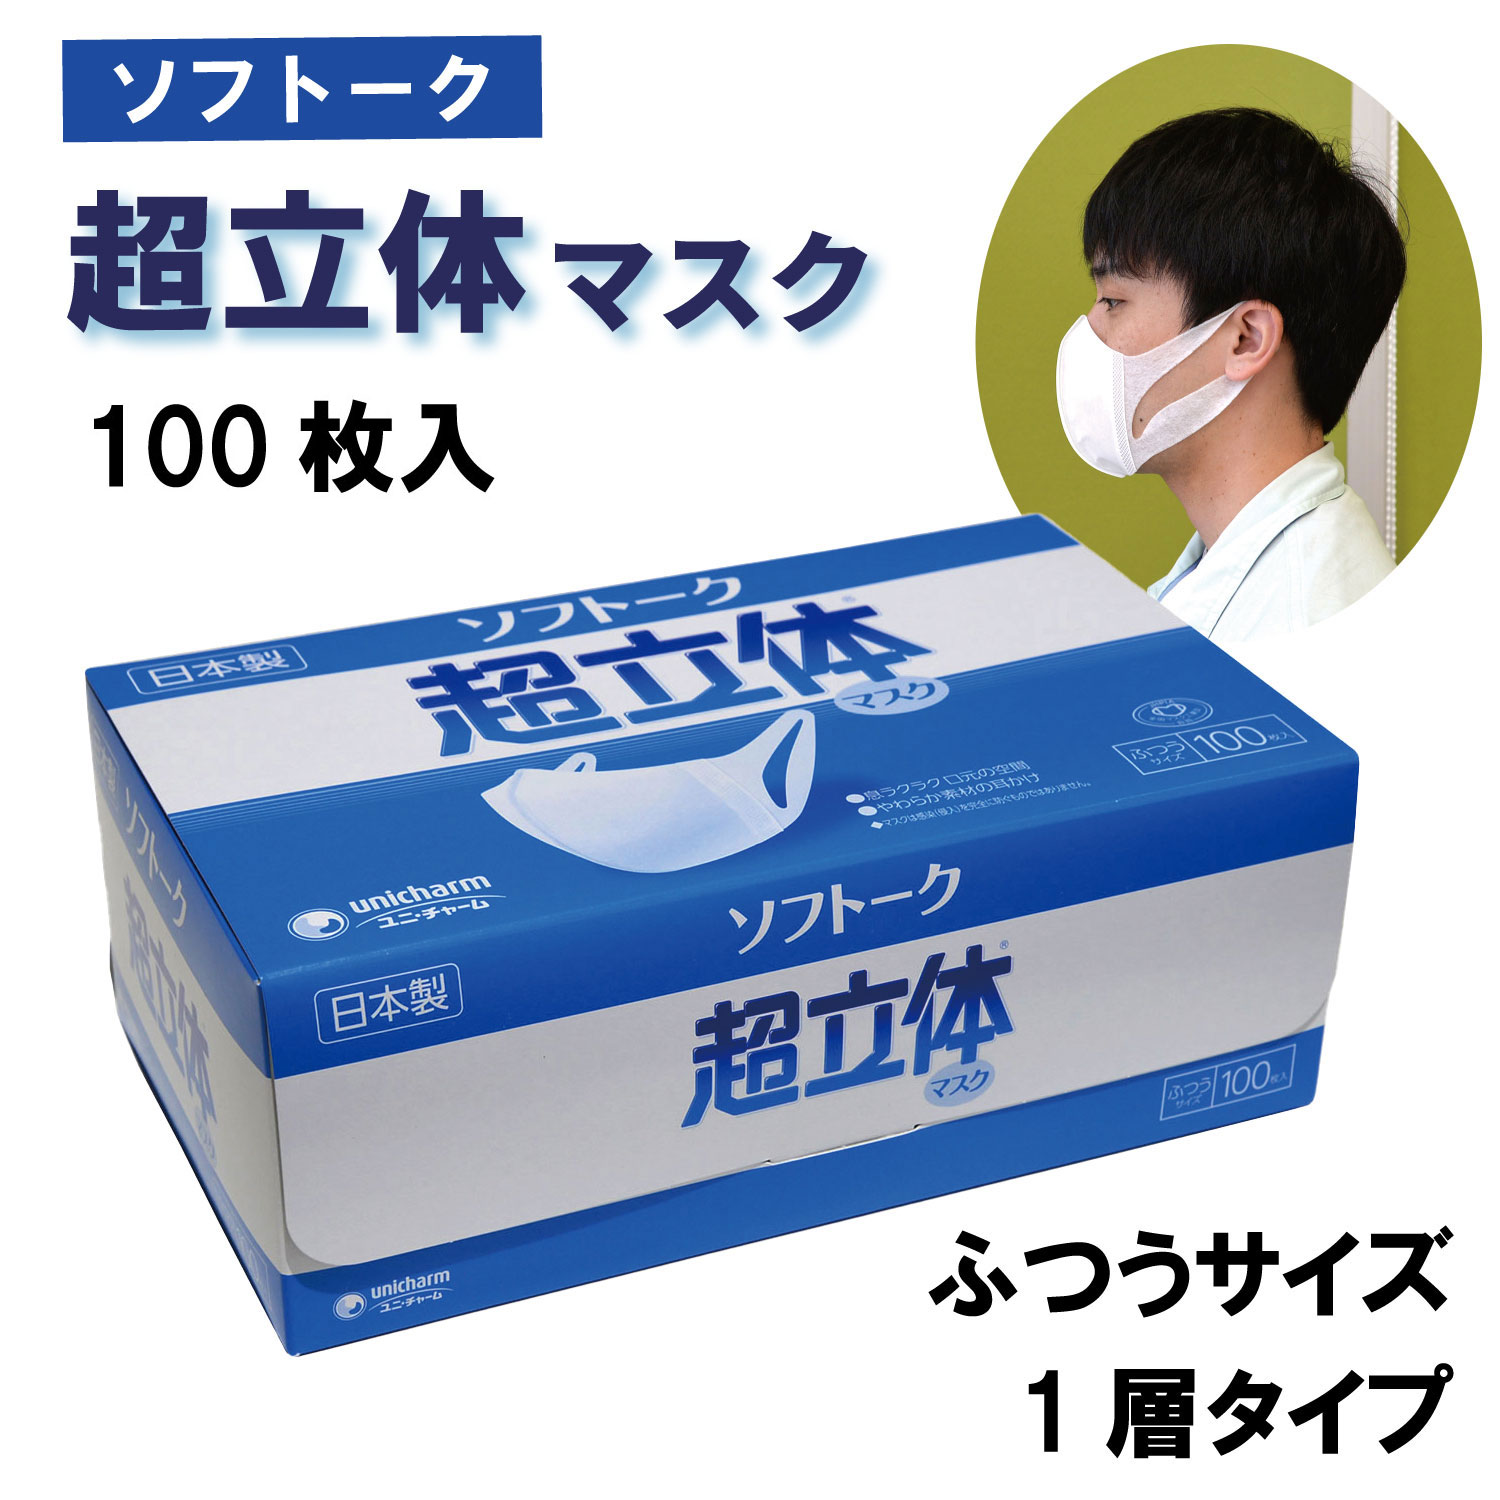 【100枚入/バラ】ユニ・チャーム ソフトーク 超立体マスク